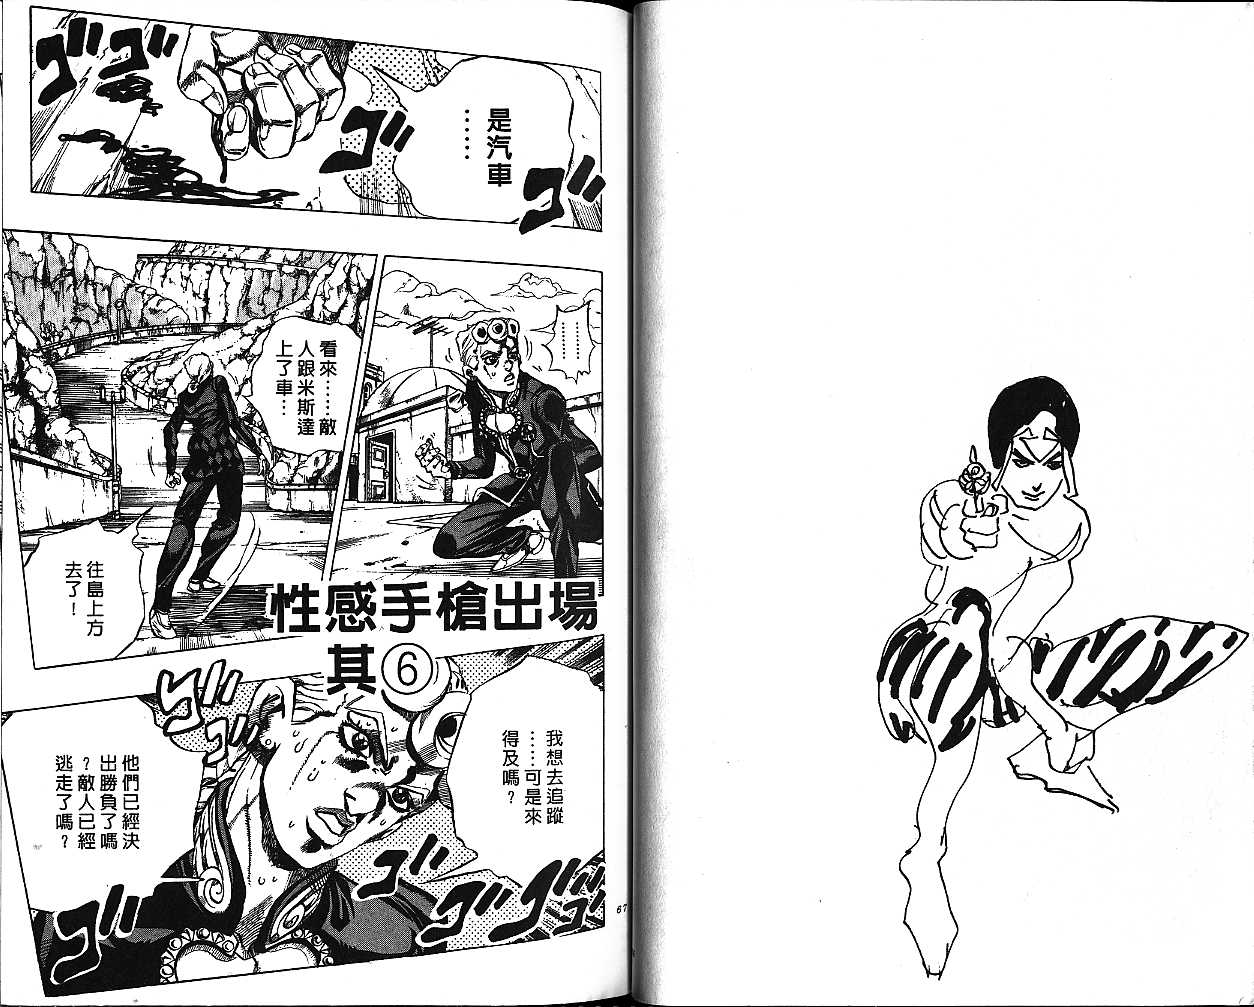 《JOJO奇妙冒险》漫画 jojo50卷